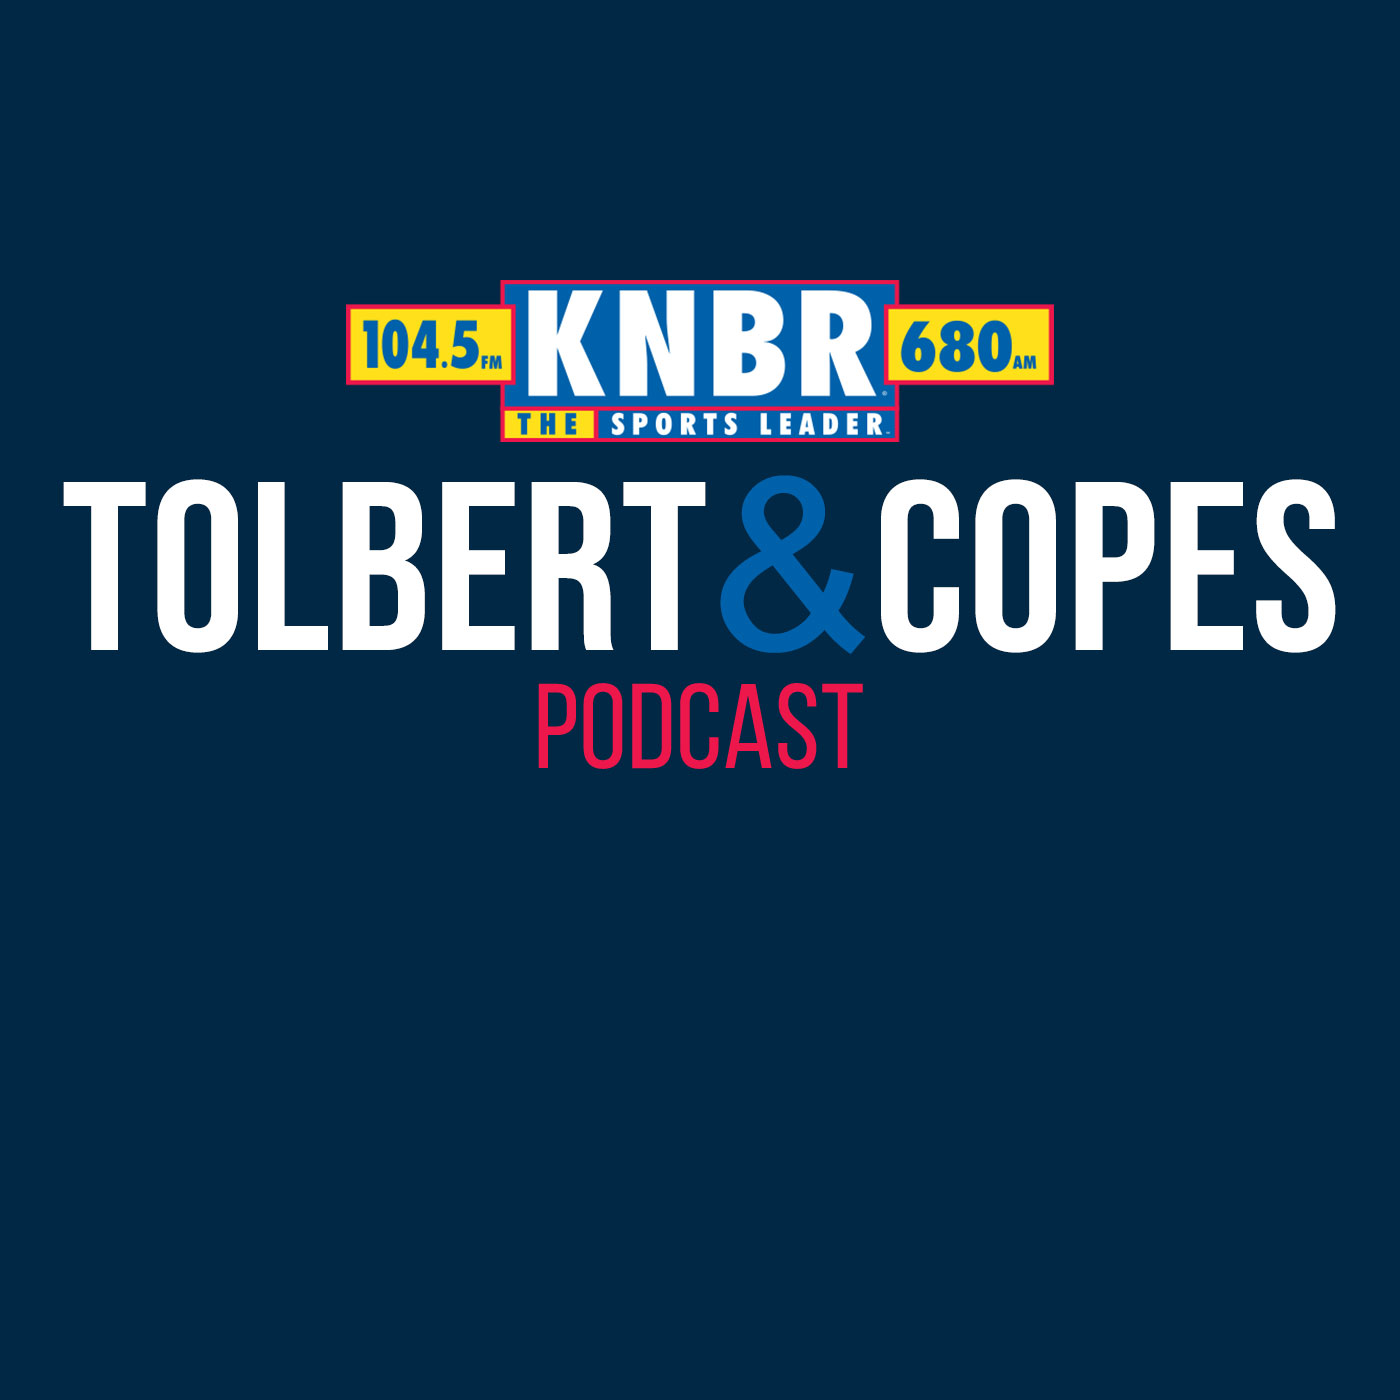 4-5 Tolbert & Copes Full Show: Giants Get Walk-off Win in Home Opener